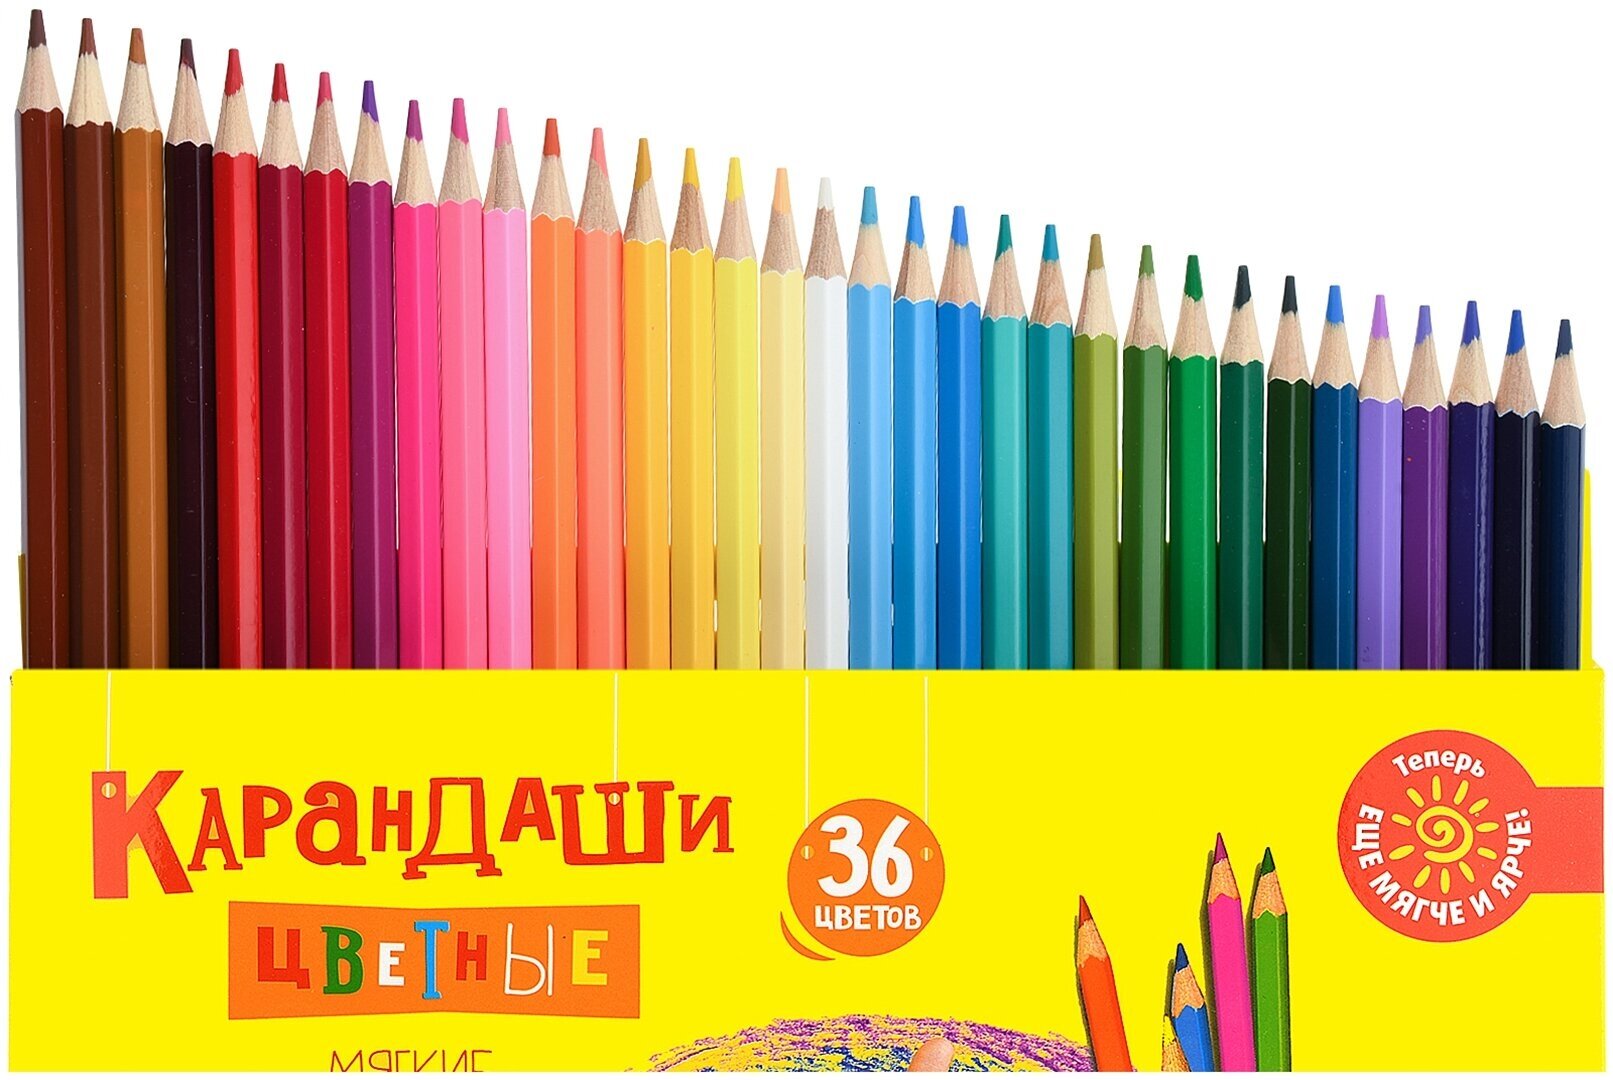 Набор цветных карандашей Каляка-маляка 36 цв. шестигран. корп. дерев. карт. уп.